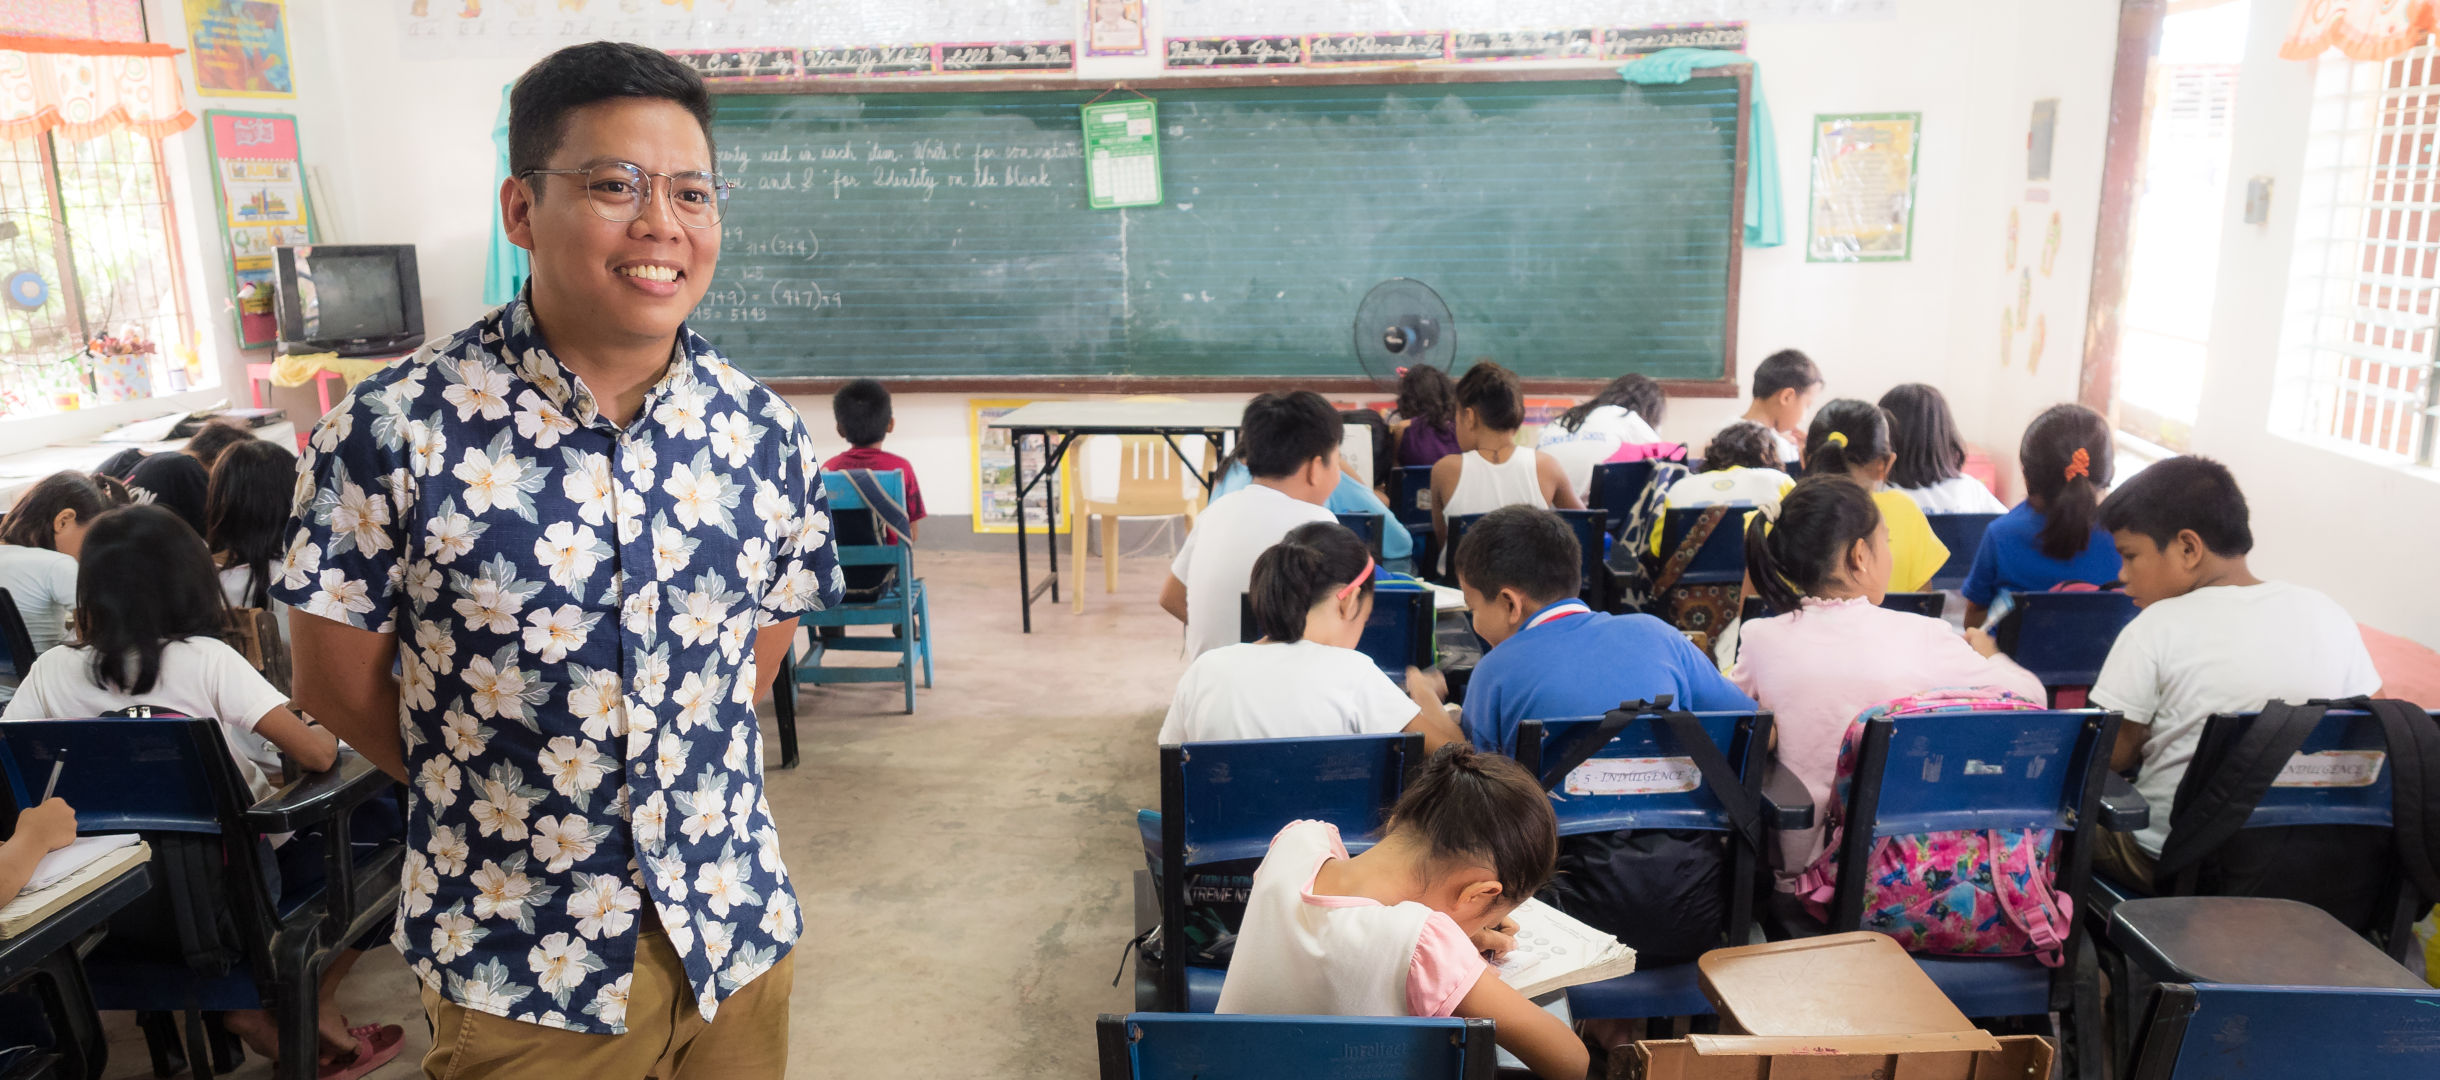 Janvie in einer Schule auf den Philippinen